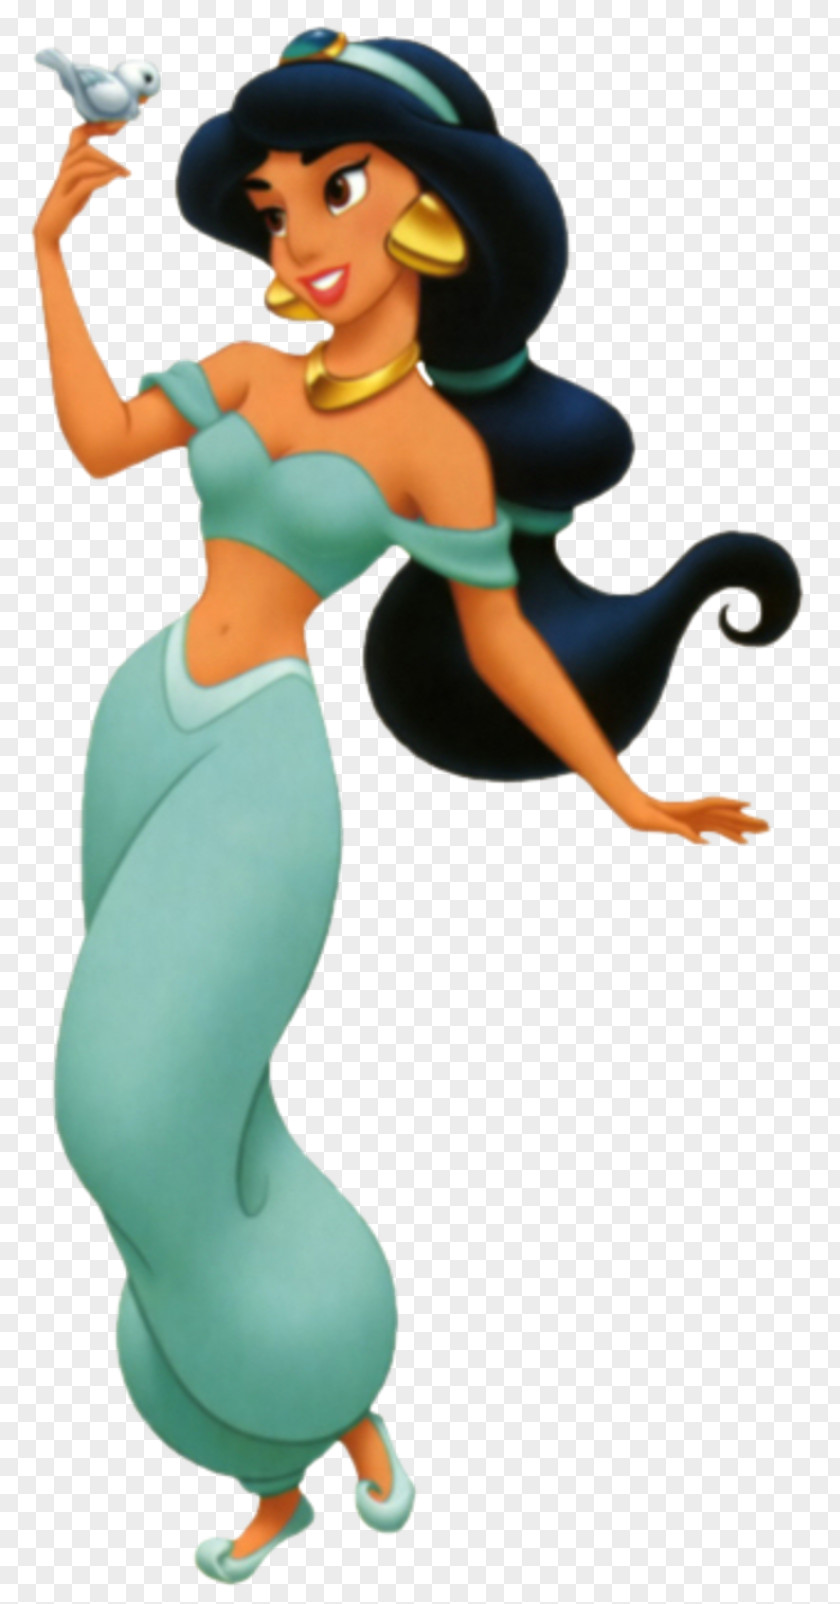 Aladdin Linda Larkin Princess Jasmine Jafar PNG